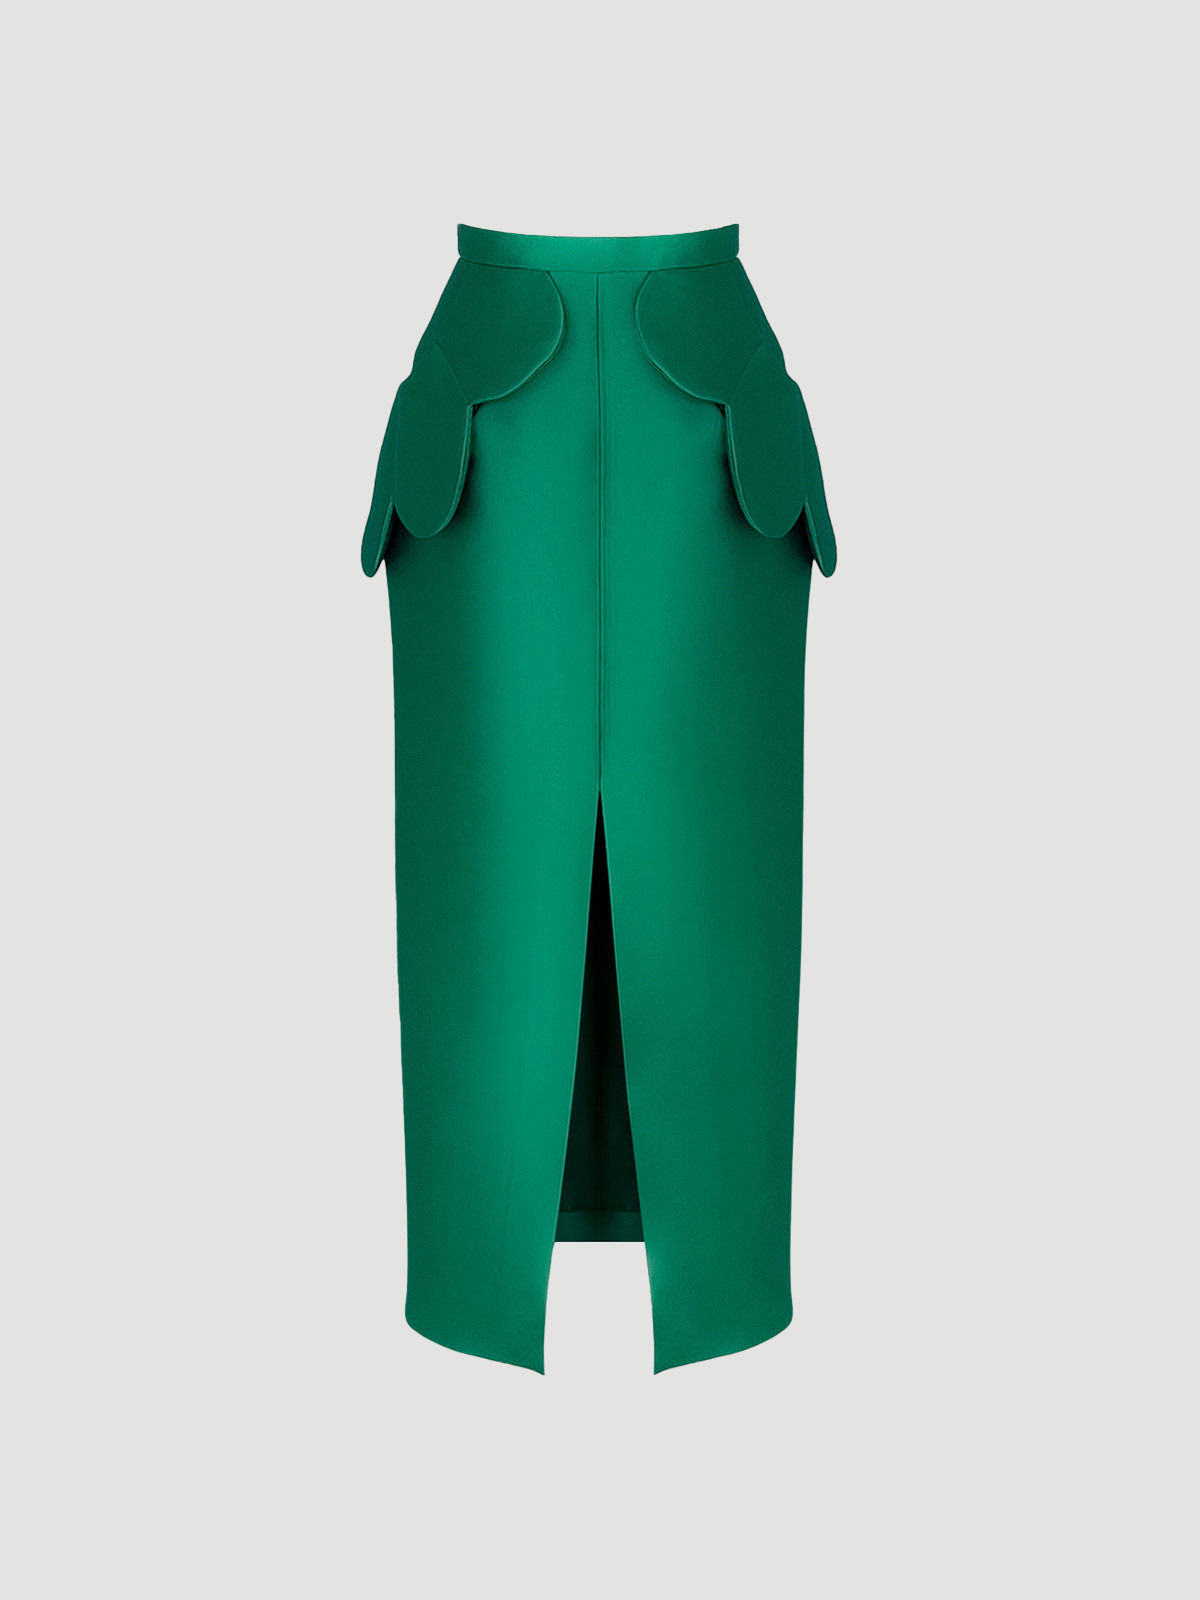 Nebuta Skirt In Emerald Green